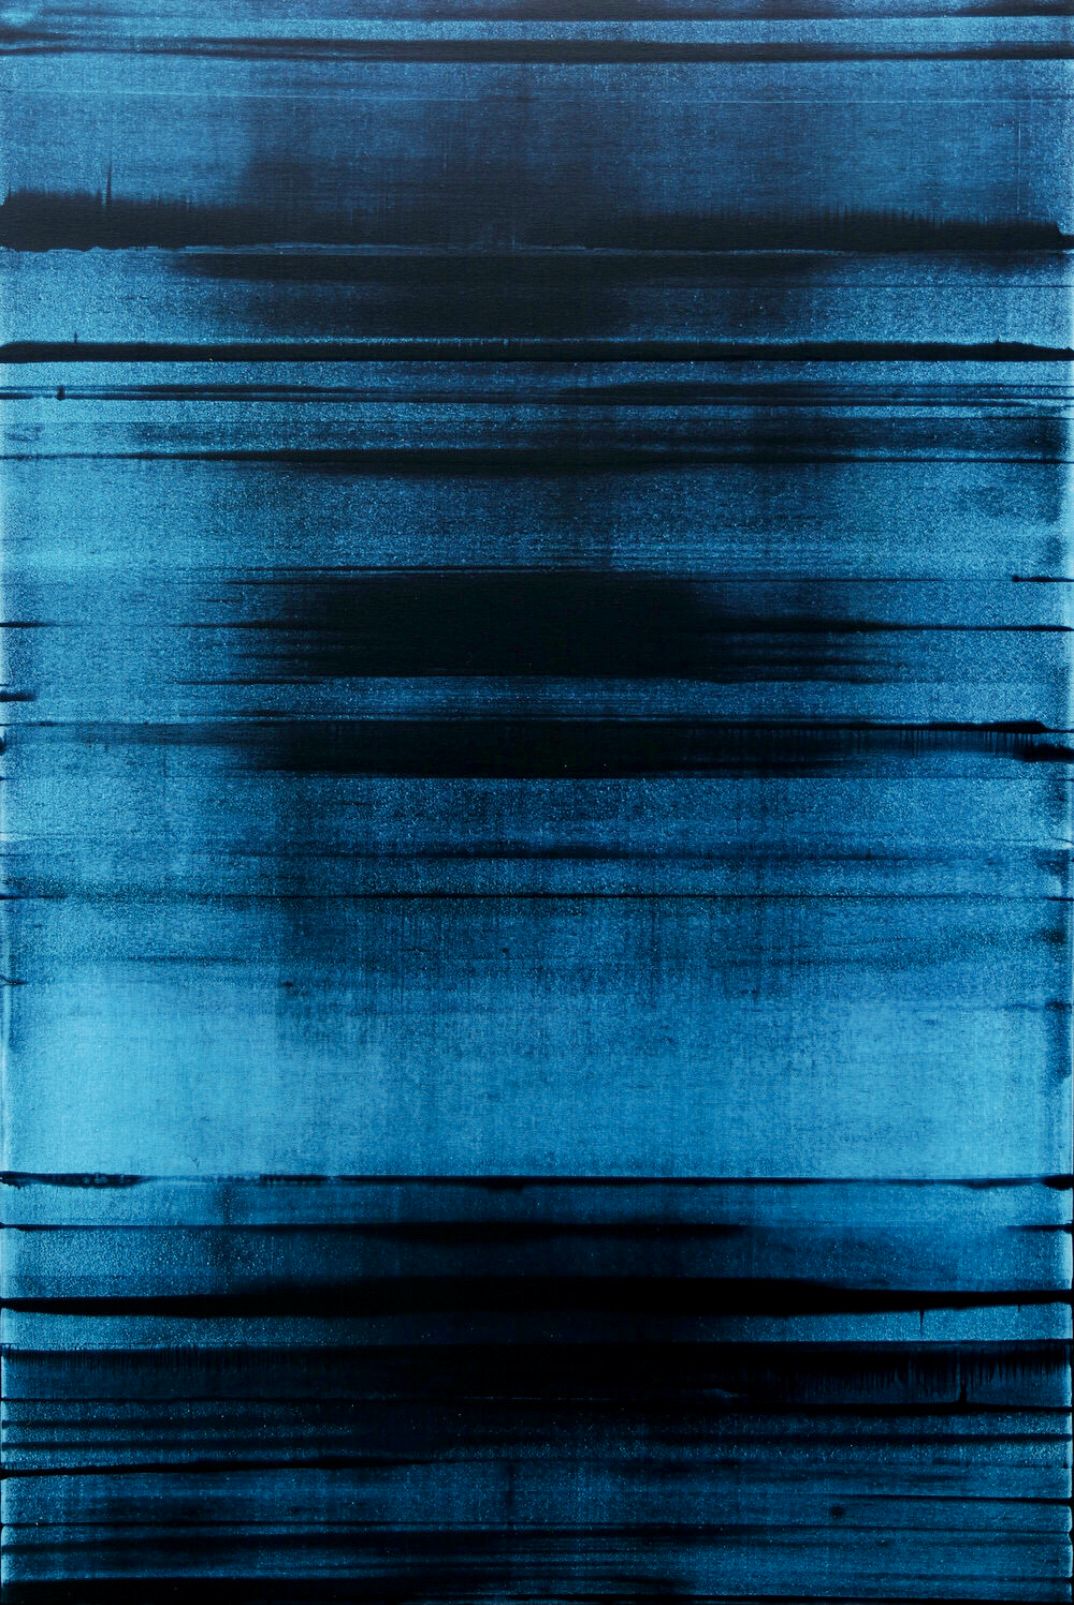 In Inez Froehlich's "BLUE FREQUENCY" abstraktes Gemälde dominiert die Farben,  Blau, monochrome Abstraktion. Der Stil des Gemäldes ist Shabby chic, Industriestil, Vintage, Retro, Boho, rustikal.